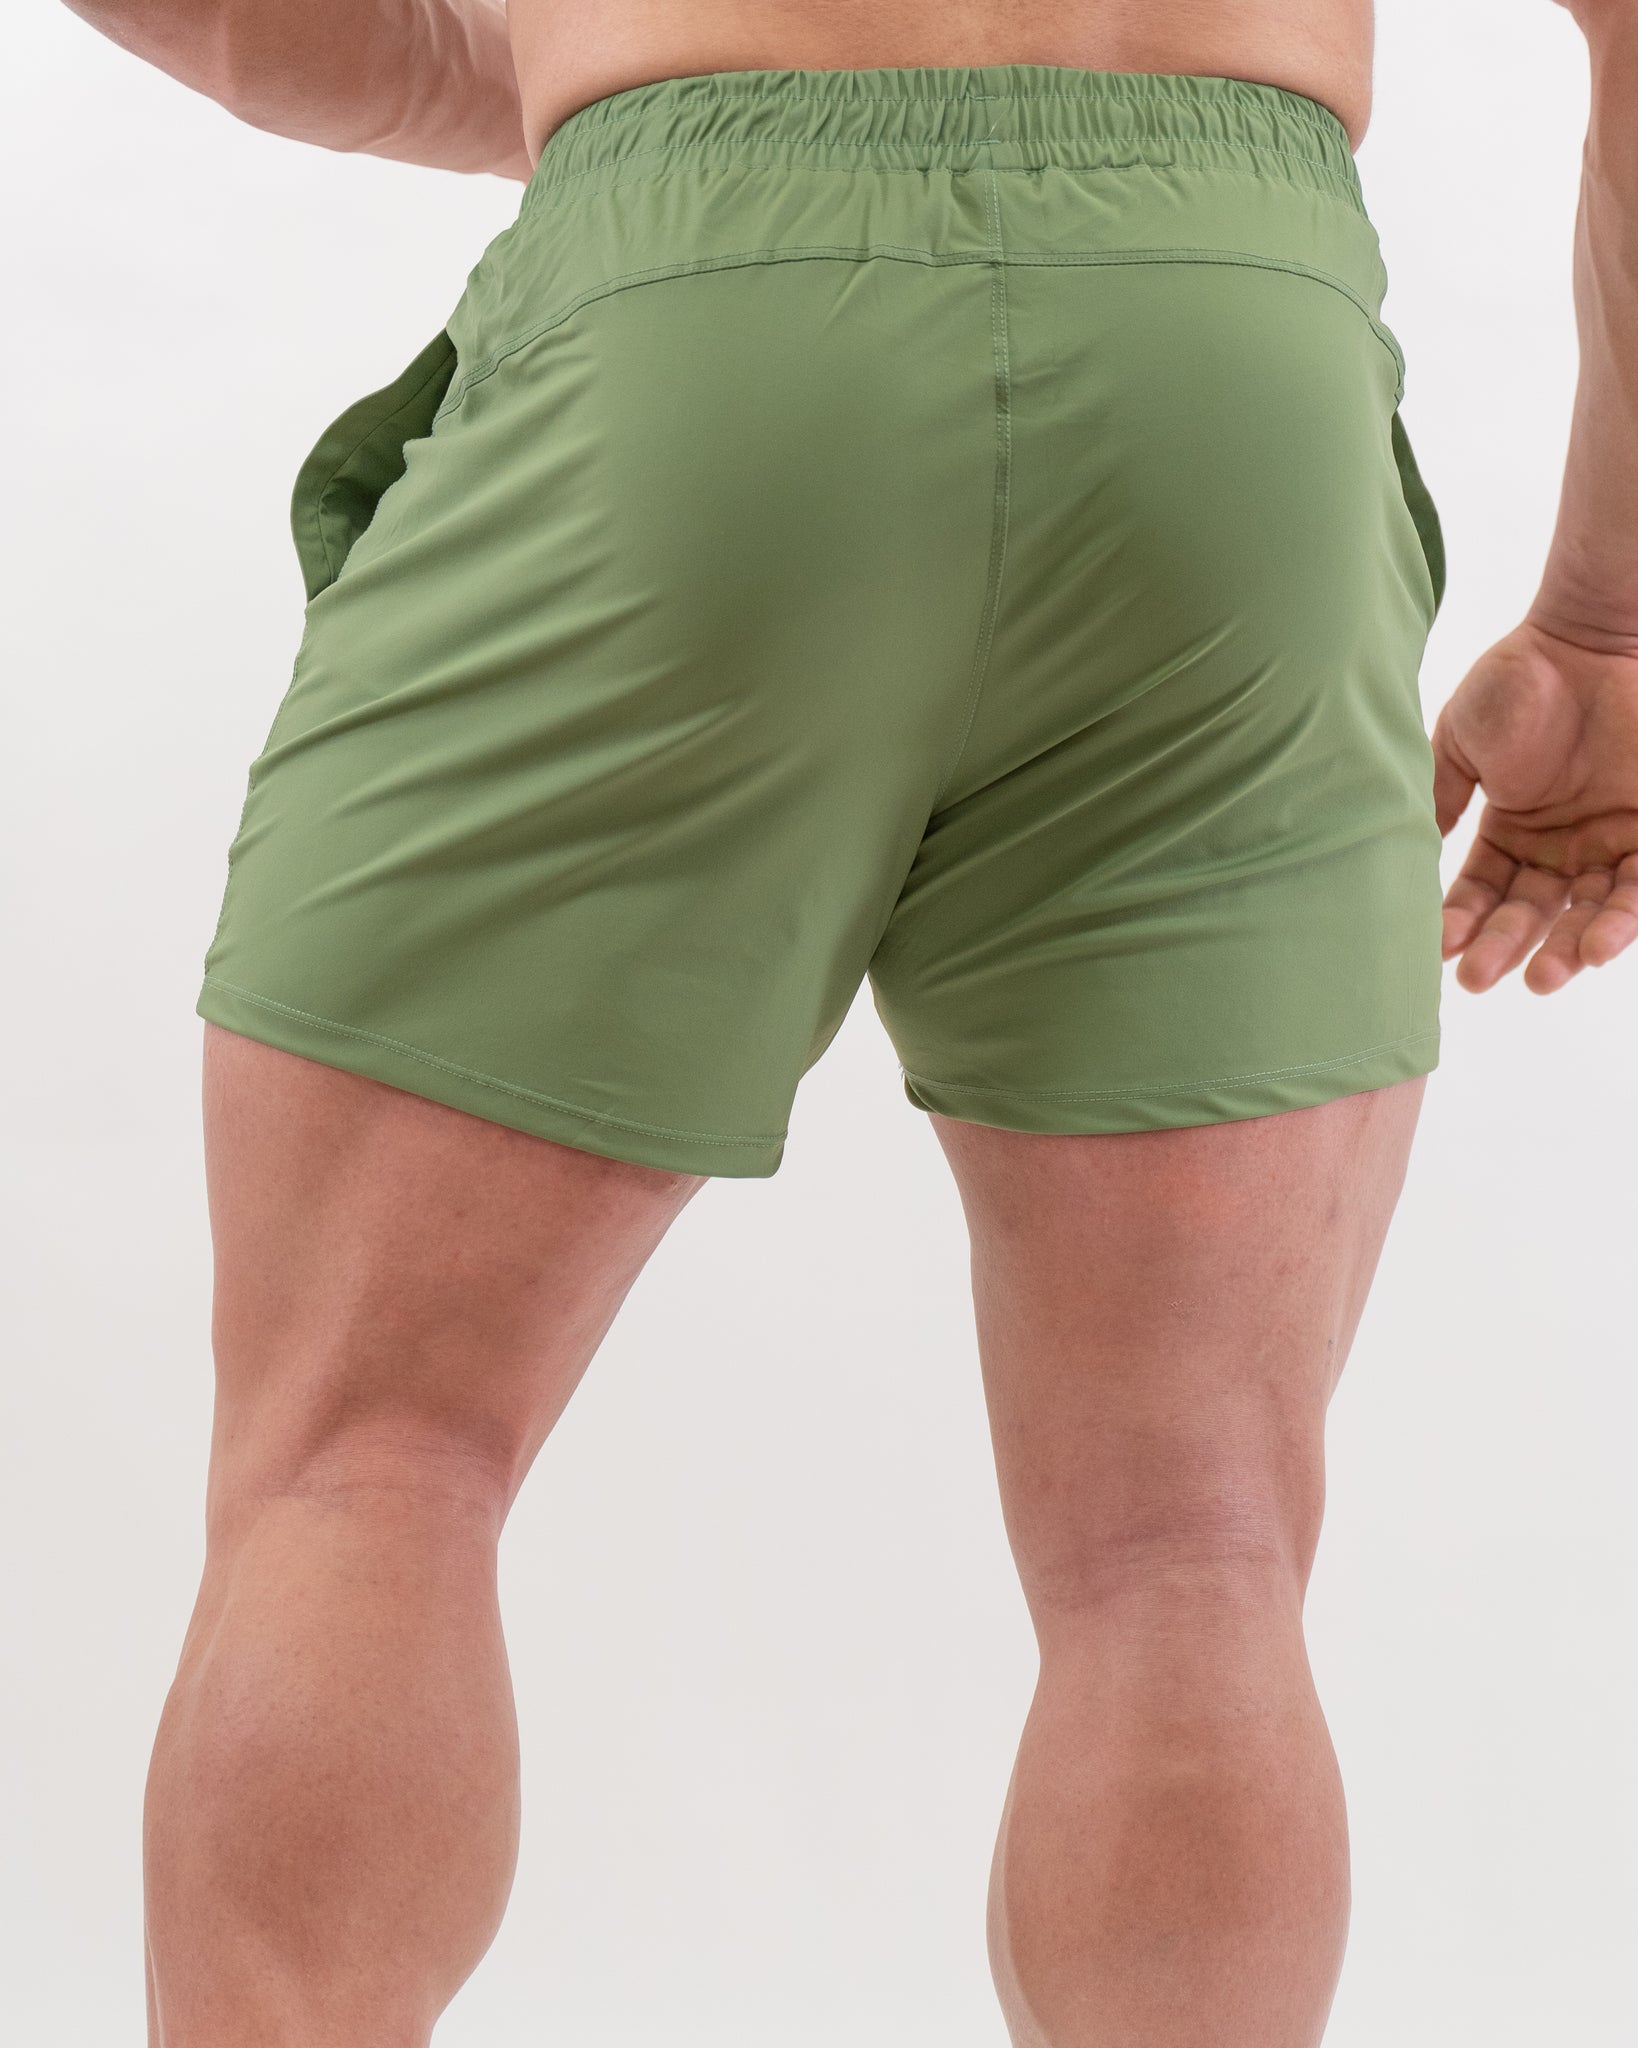 Pantalones Cortos SBP - Verdes